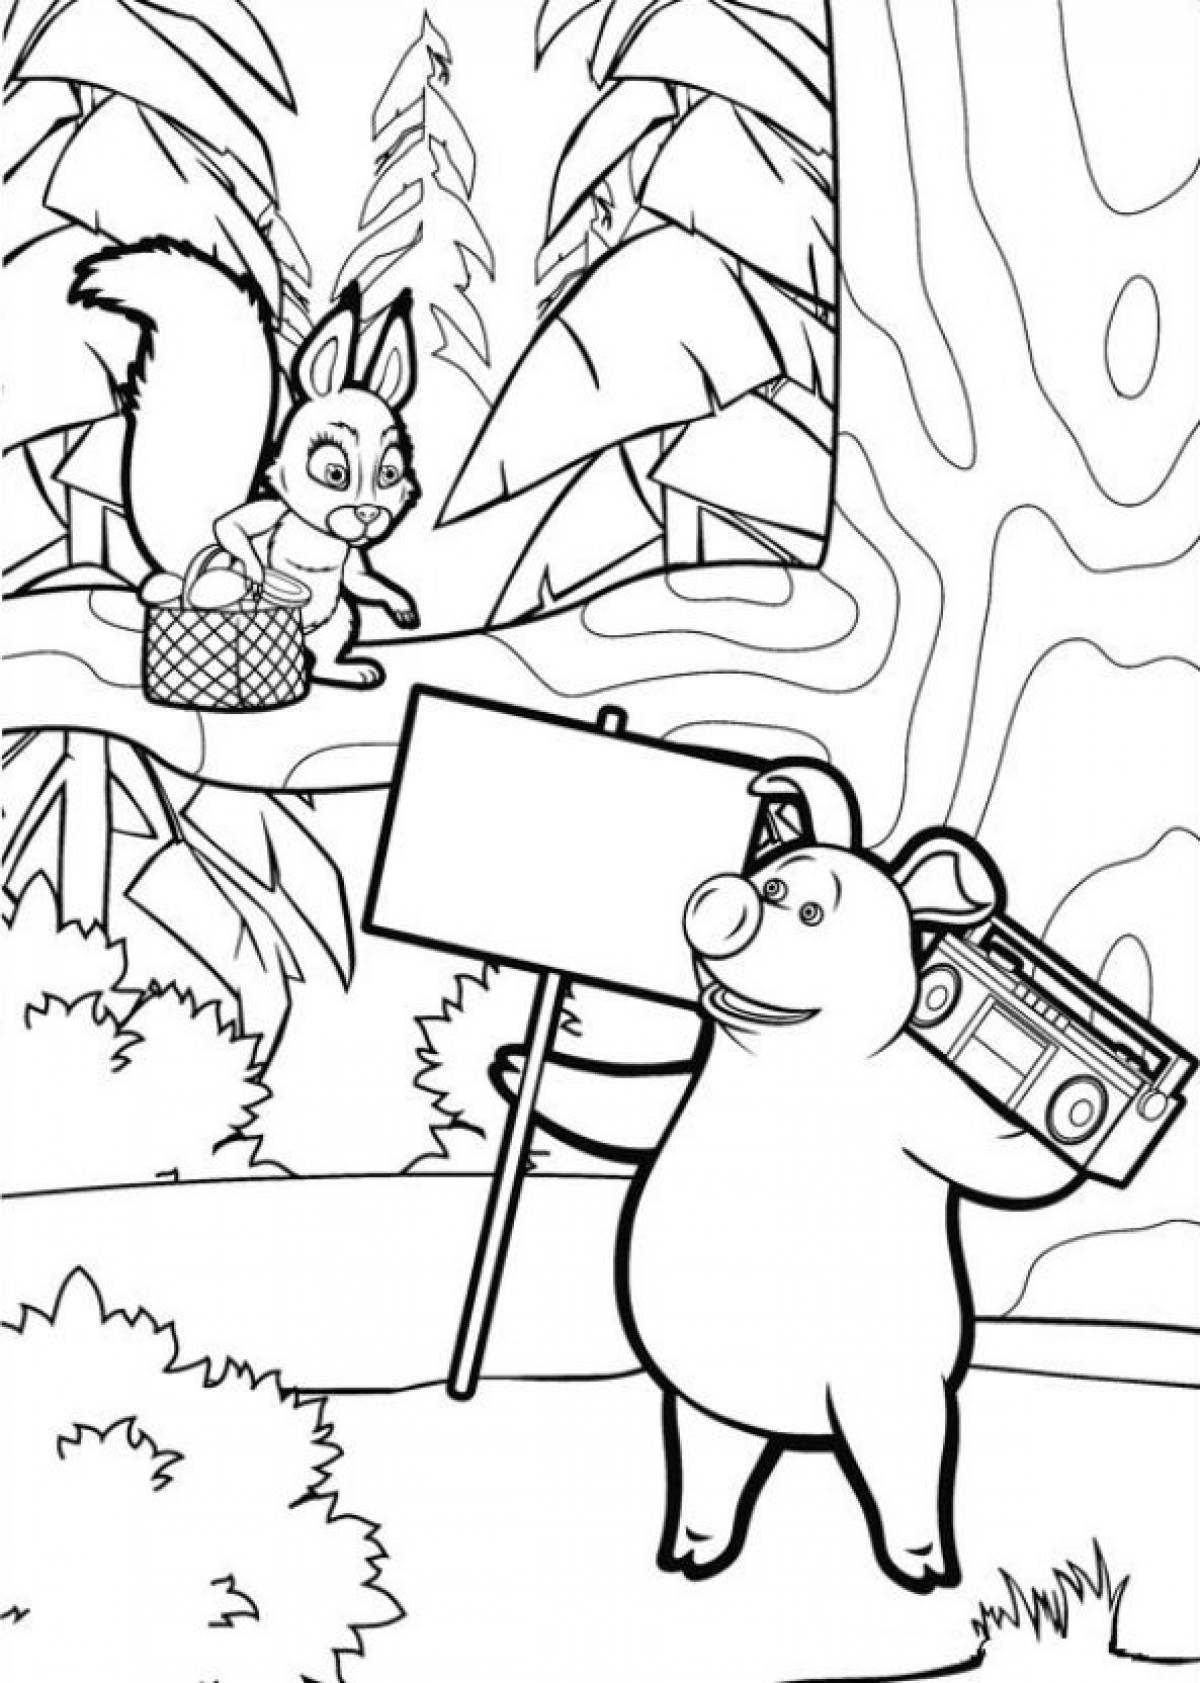 Раскраска маша и медведь 2. Медведь из мультфильма Маша и медведь раскраска. Свинья из мультика Маша и медведь раскраска. Раскраска Маша и медведь поросенок. Раскраска Маша и медведь персонажи мультика.